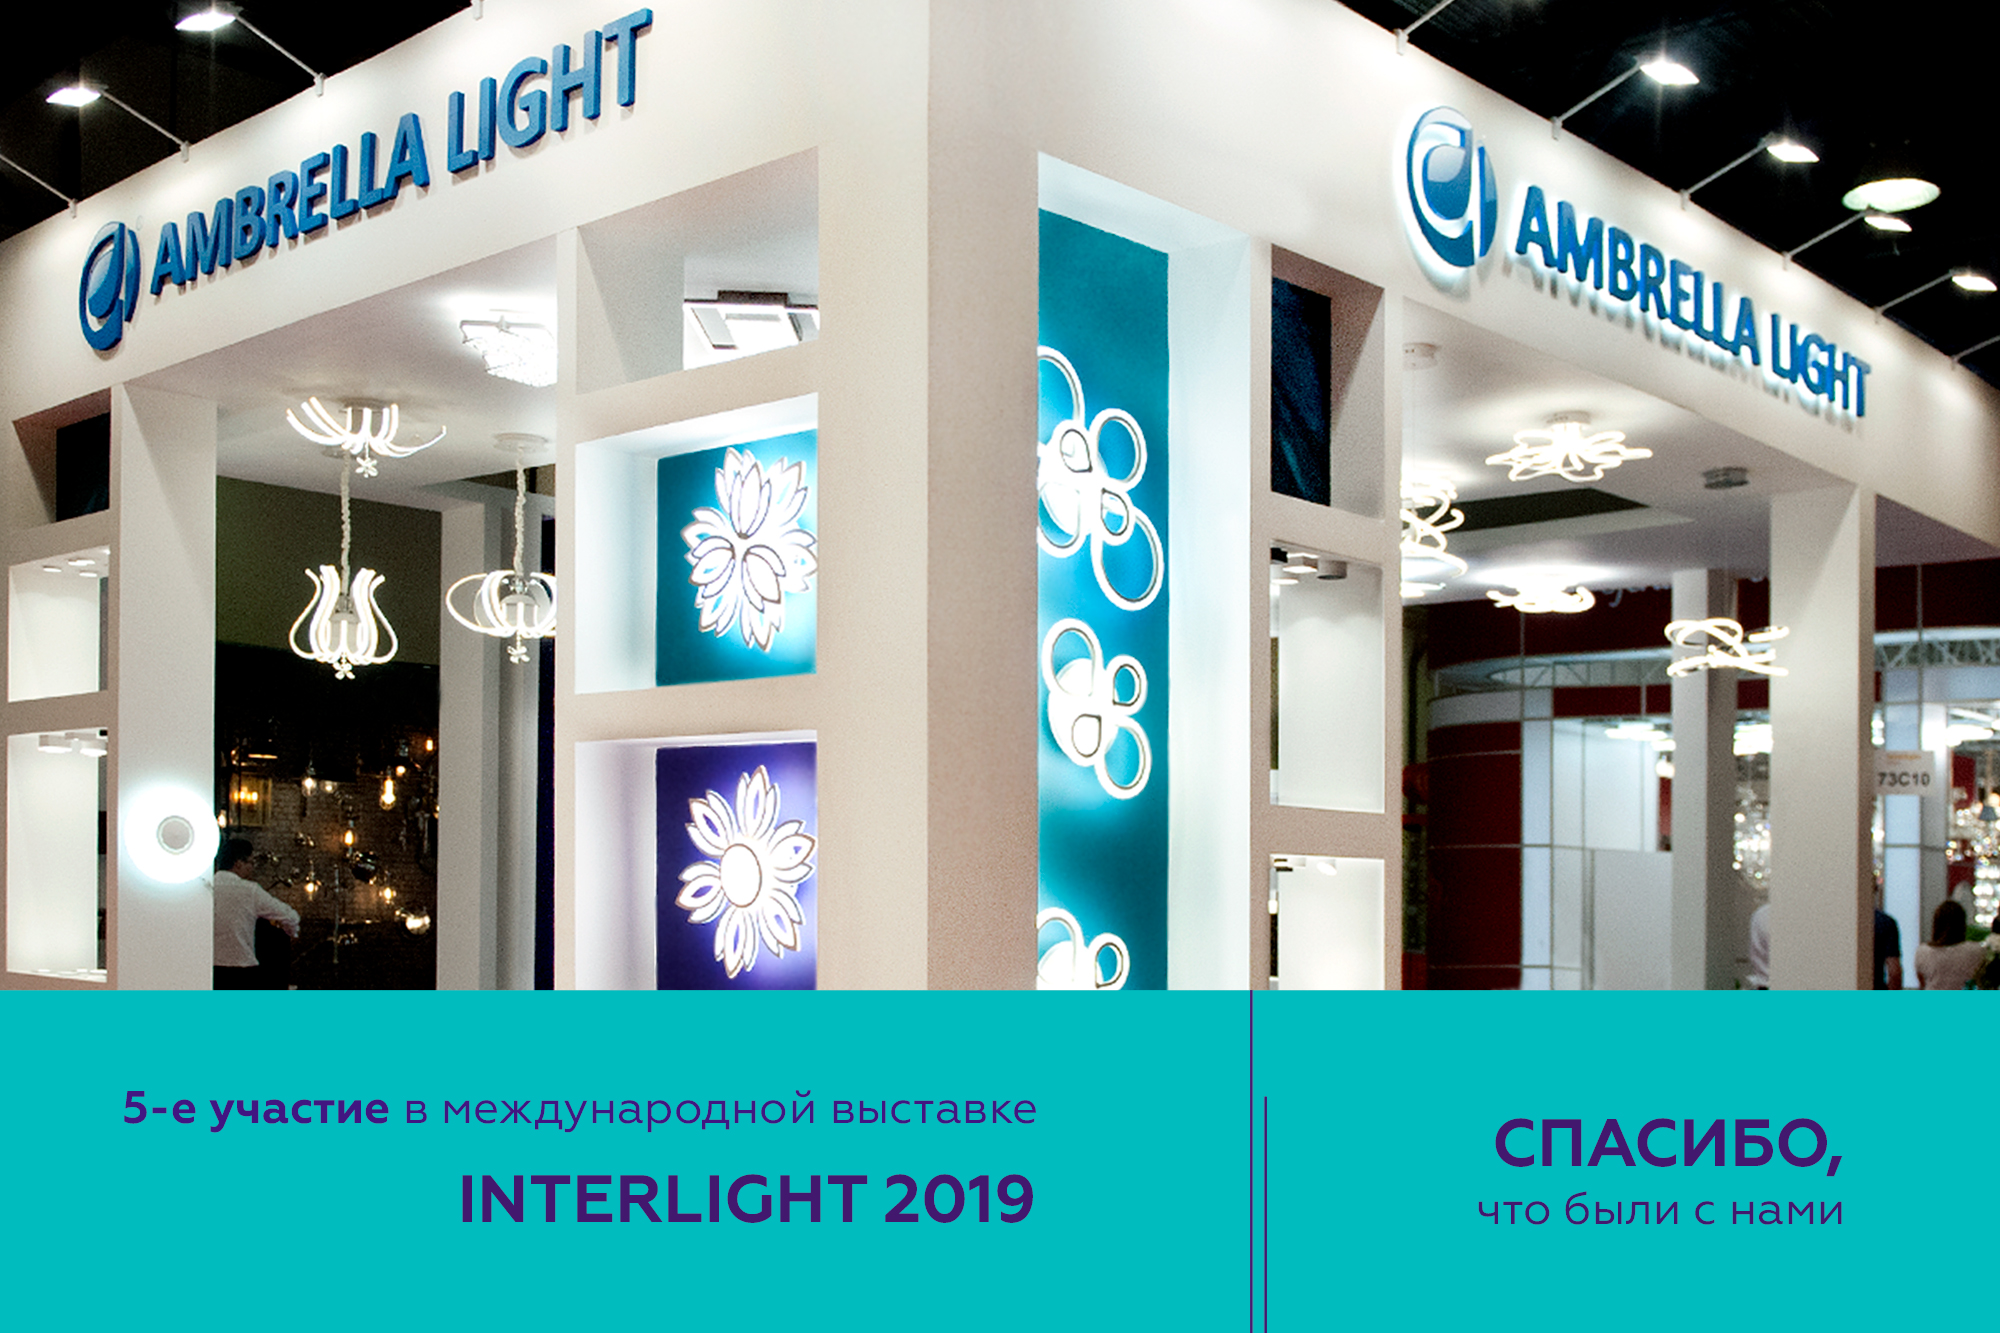 INTERLIGHT 2019 - Международная выставка освещения 